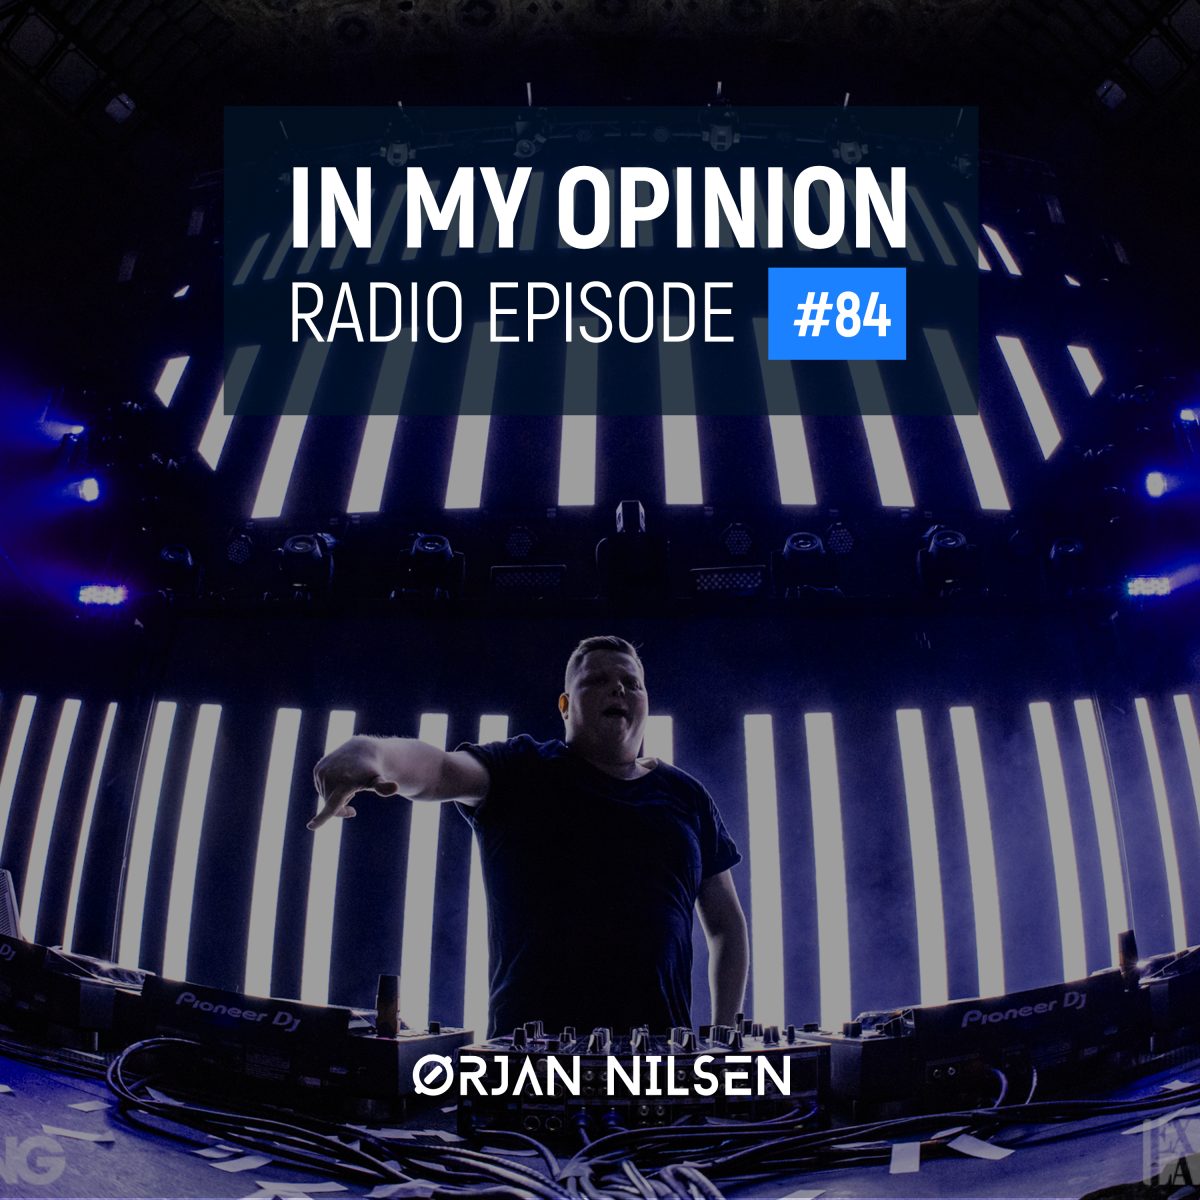 Orjan Nilsen - In My Opinion Radio (Episode 084)